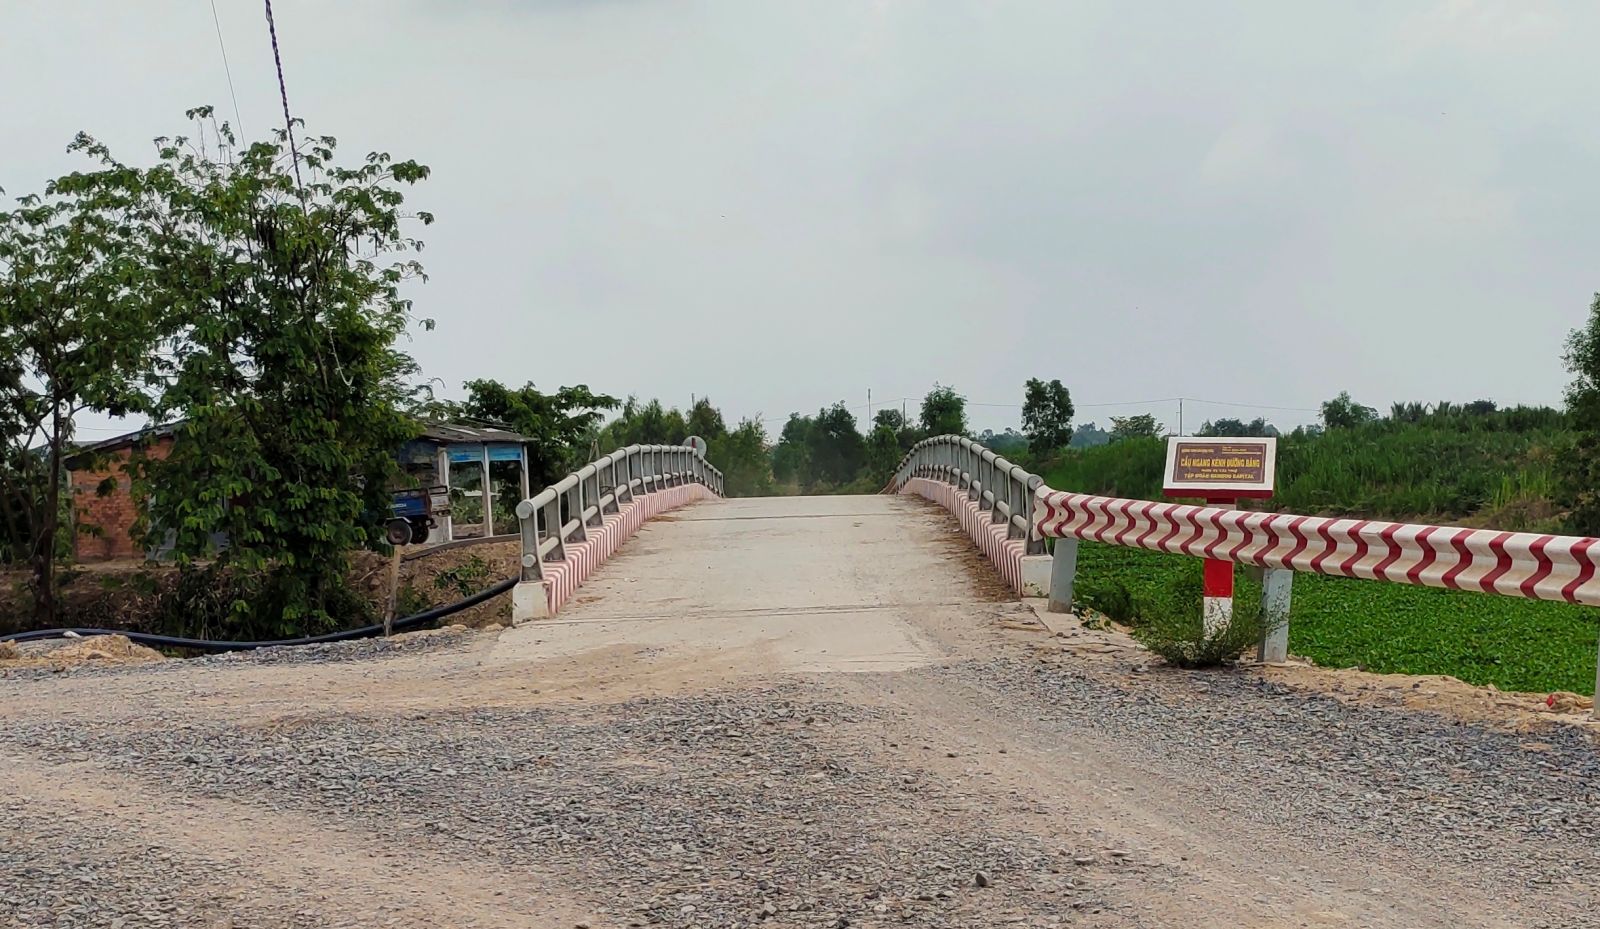 Ngã tư đường giao thông nông thôn ấp Mây Rắc, xã Bình Thạnh, huyện Mộc Hóa đã được đầu tư xây dựng phục vụ nhu cầu đi lại của người dân